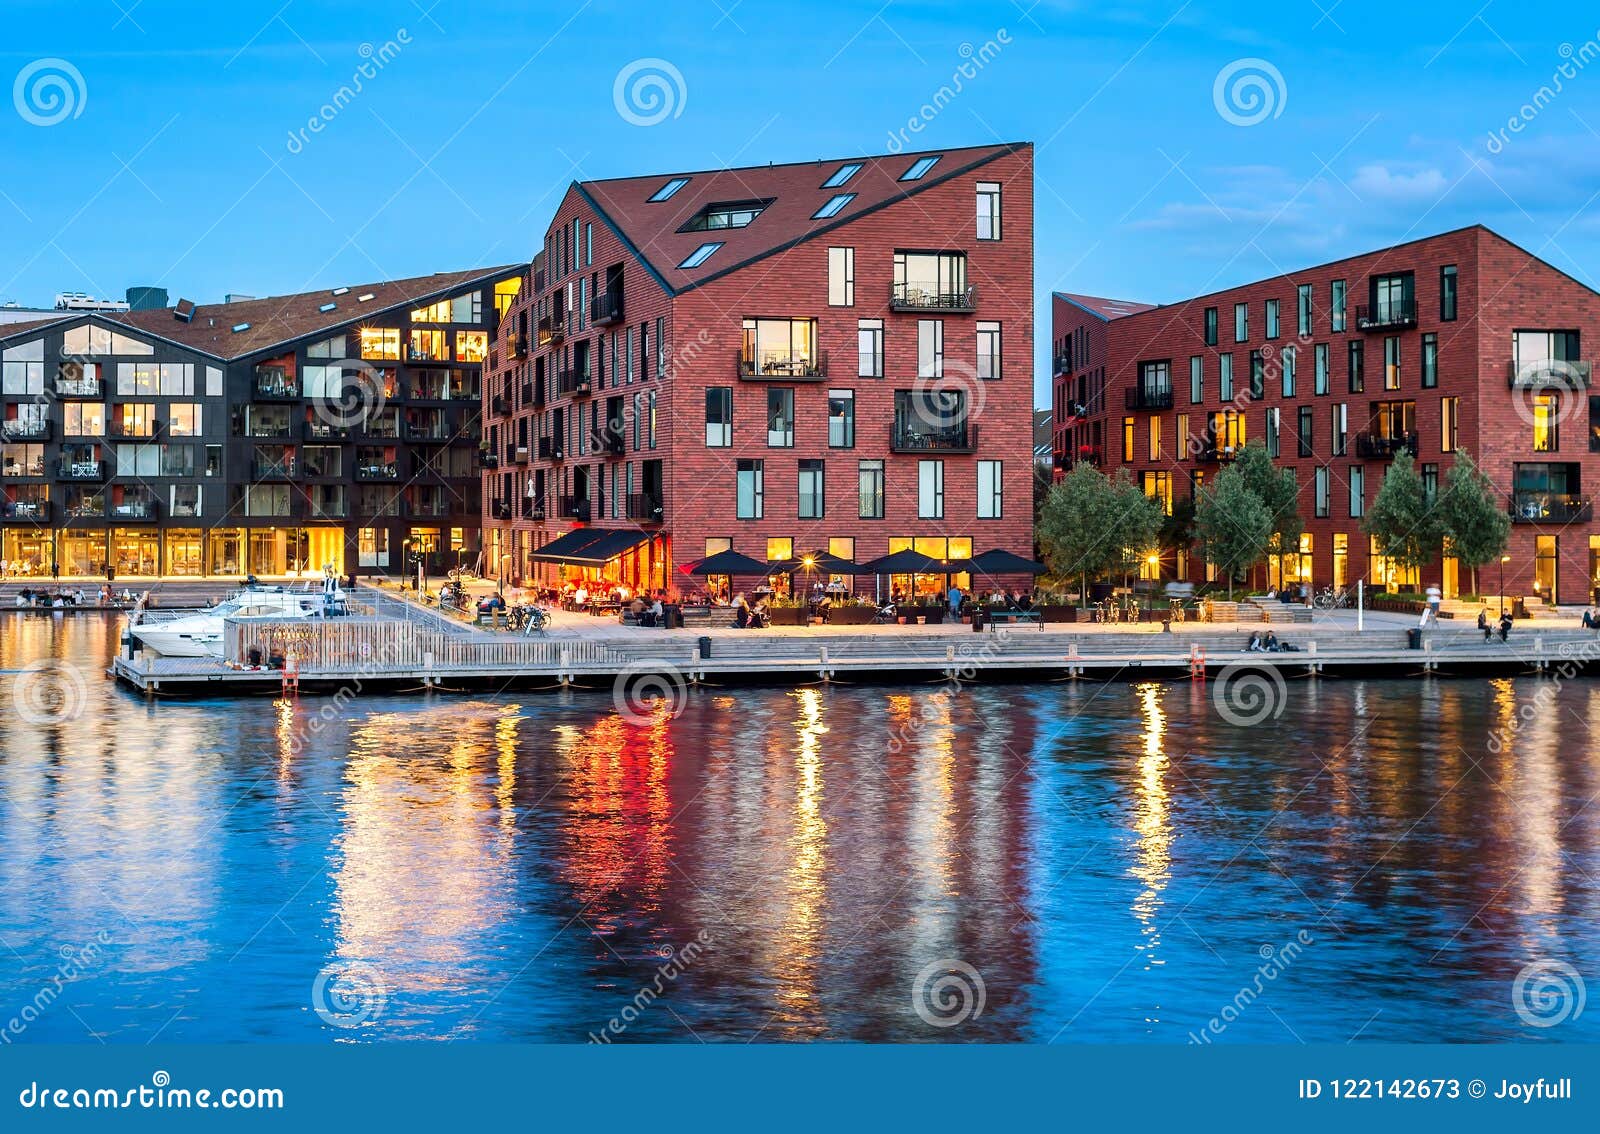 bezorgdheid Sluiting Voorschrift Modern Architecture Design Buildings, Copenhagen Stock Image - Image of  destination, area: 122142673